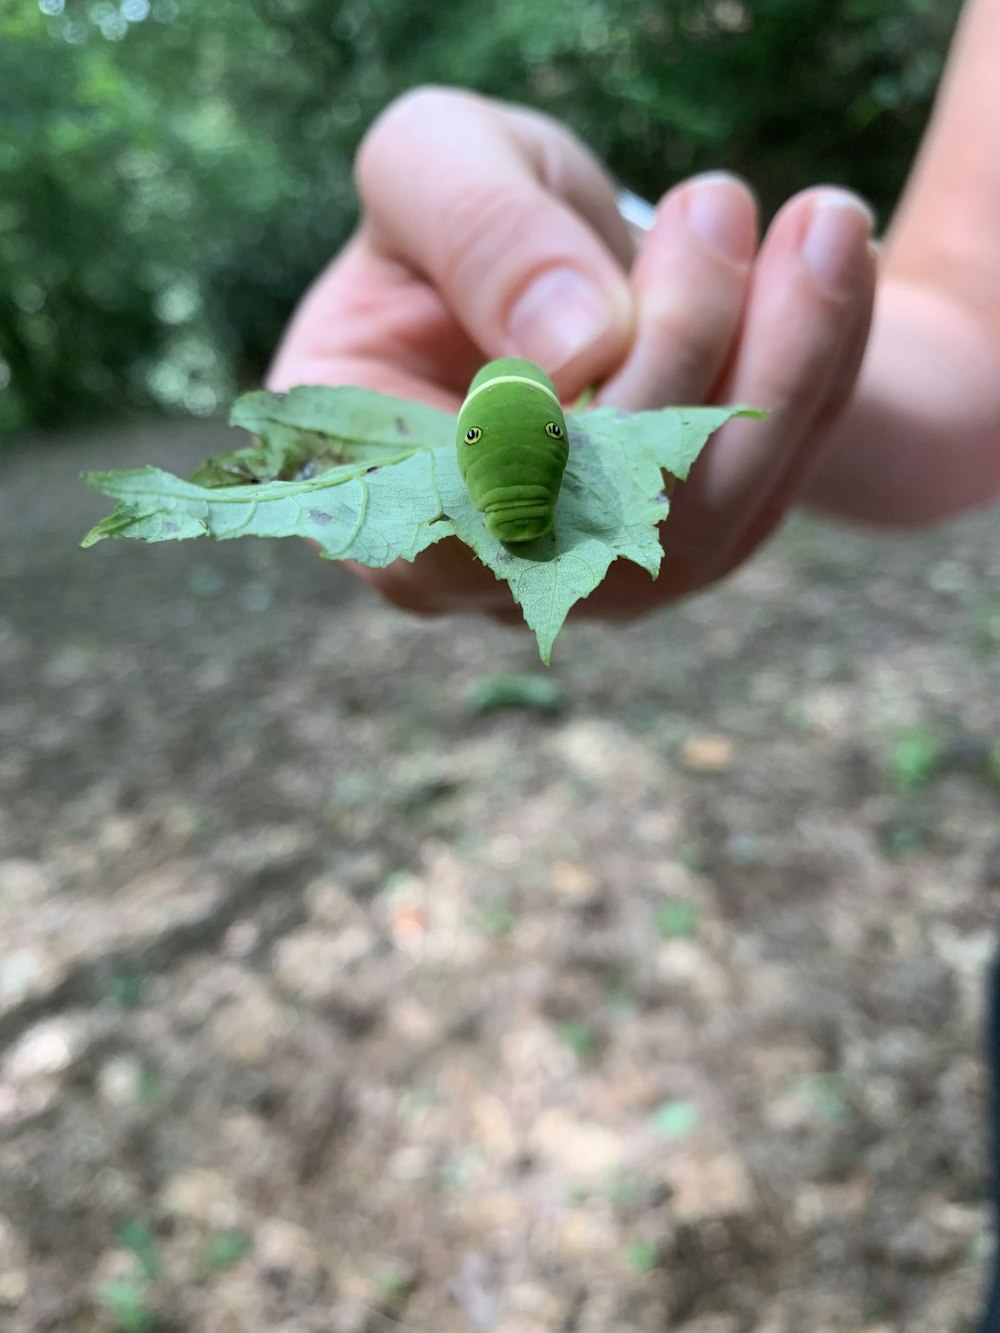 shallow focus photography of green caterpillar